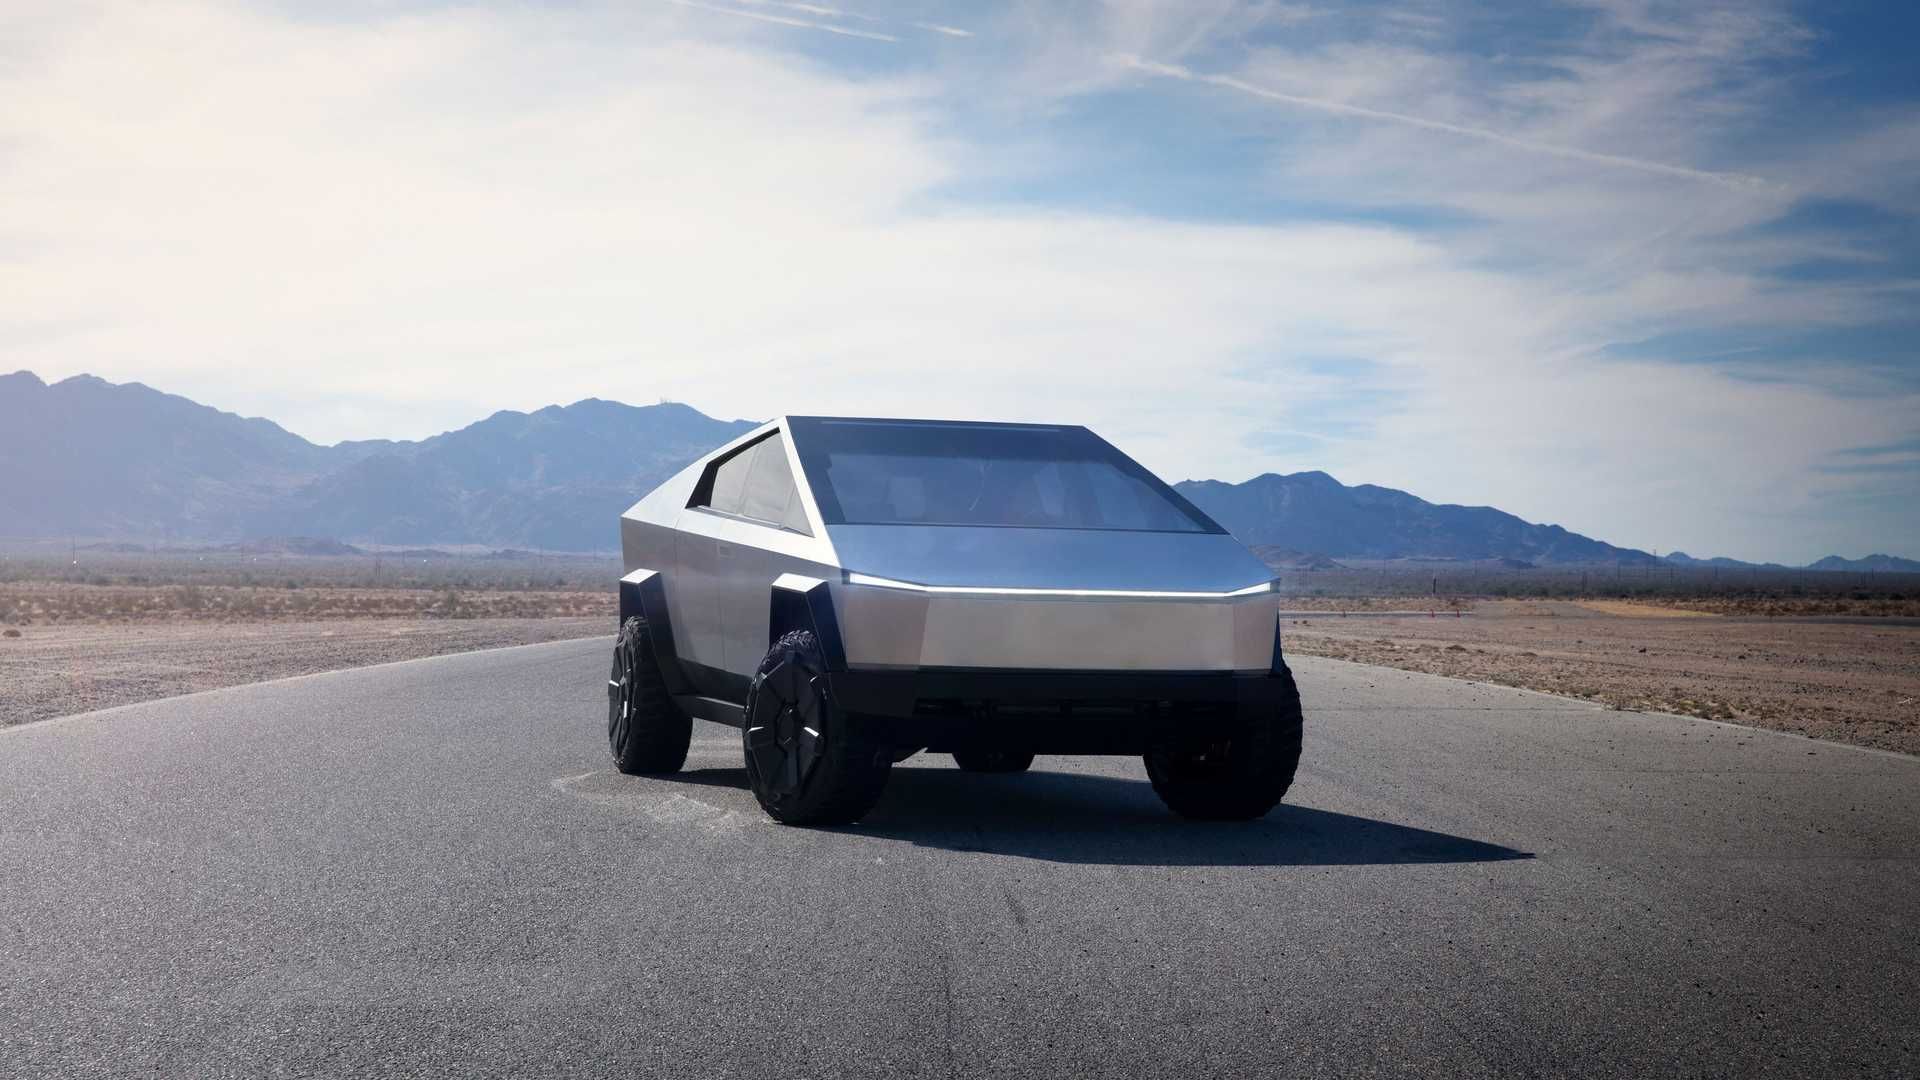 تسلا سایبرتراک / Tesla Cybertruck در جاده با نمای آسمان ابری